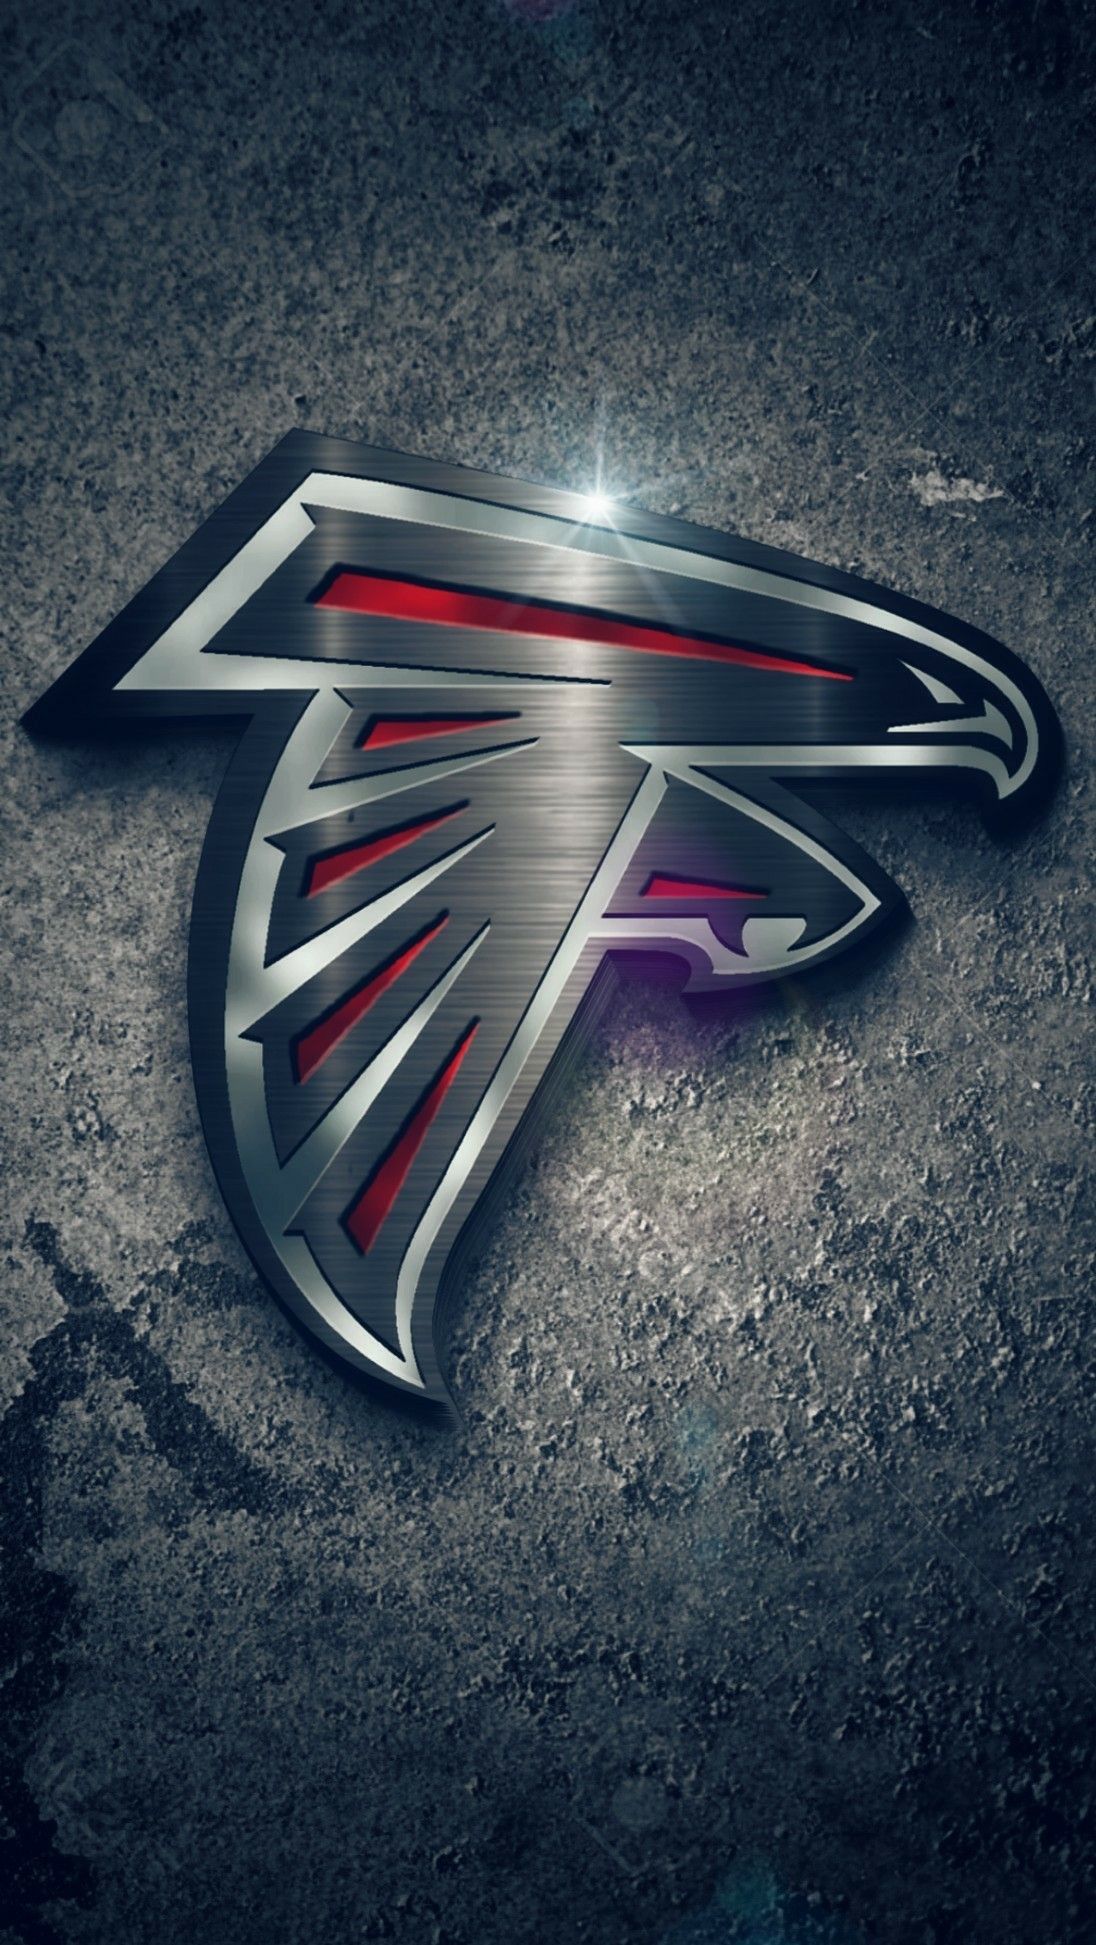 NFL Falcons Logo Wallpaper. Atlanta falcons wallpaper, Atlanta falcons football, Atlanta falcons logo